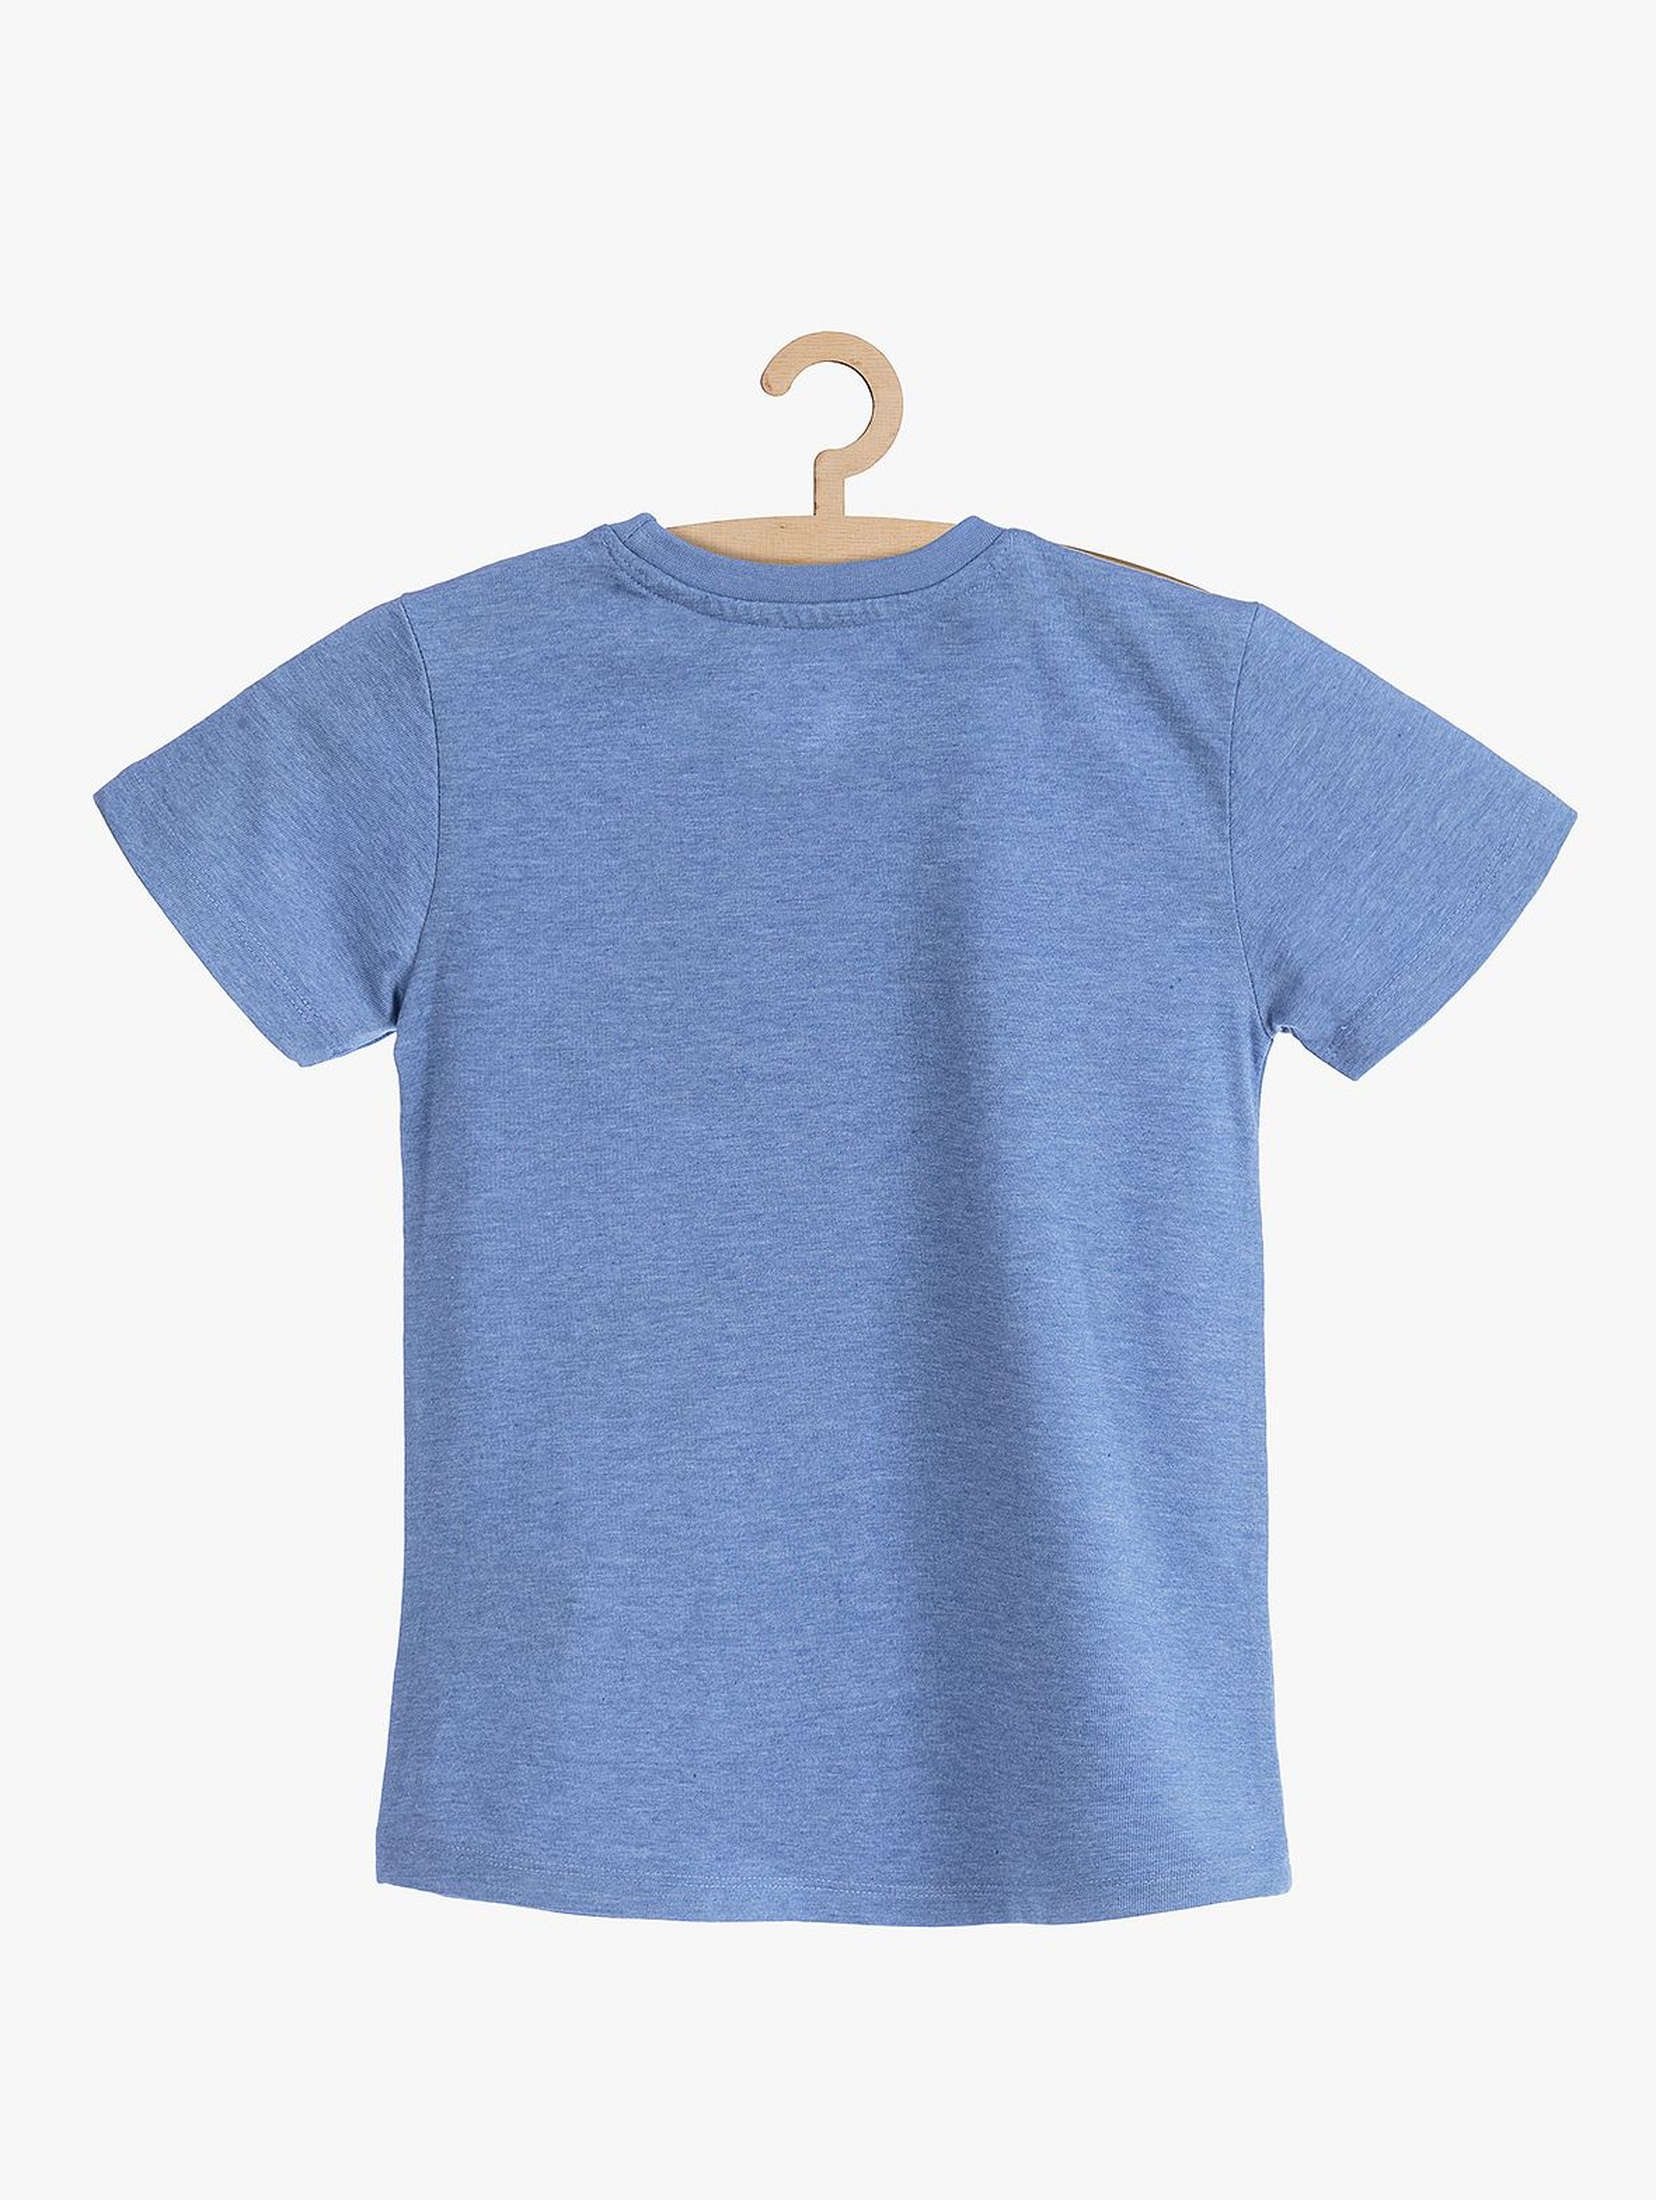 T-shirt niebieski dla chłopca- Speed Up